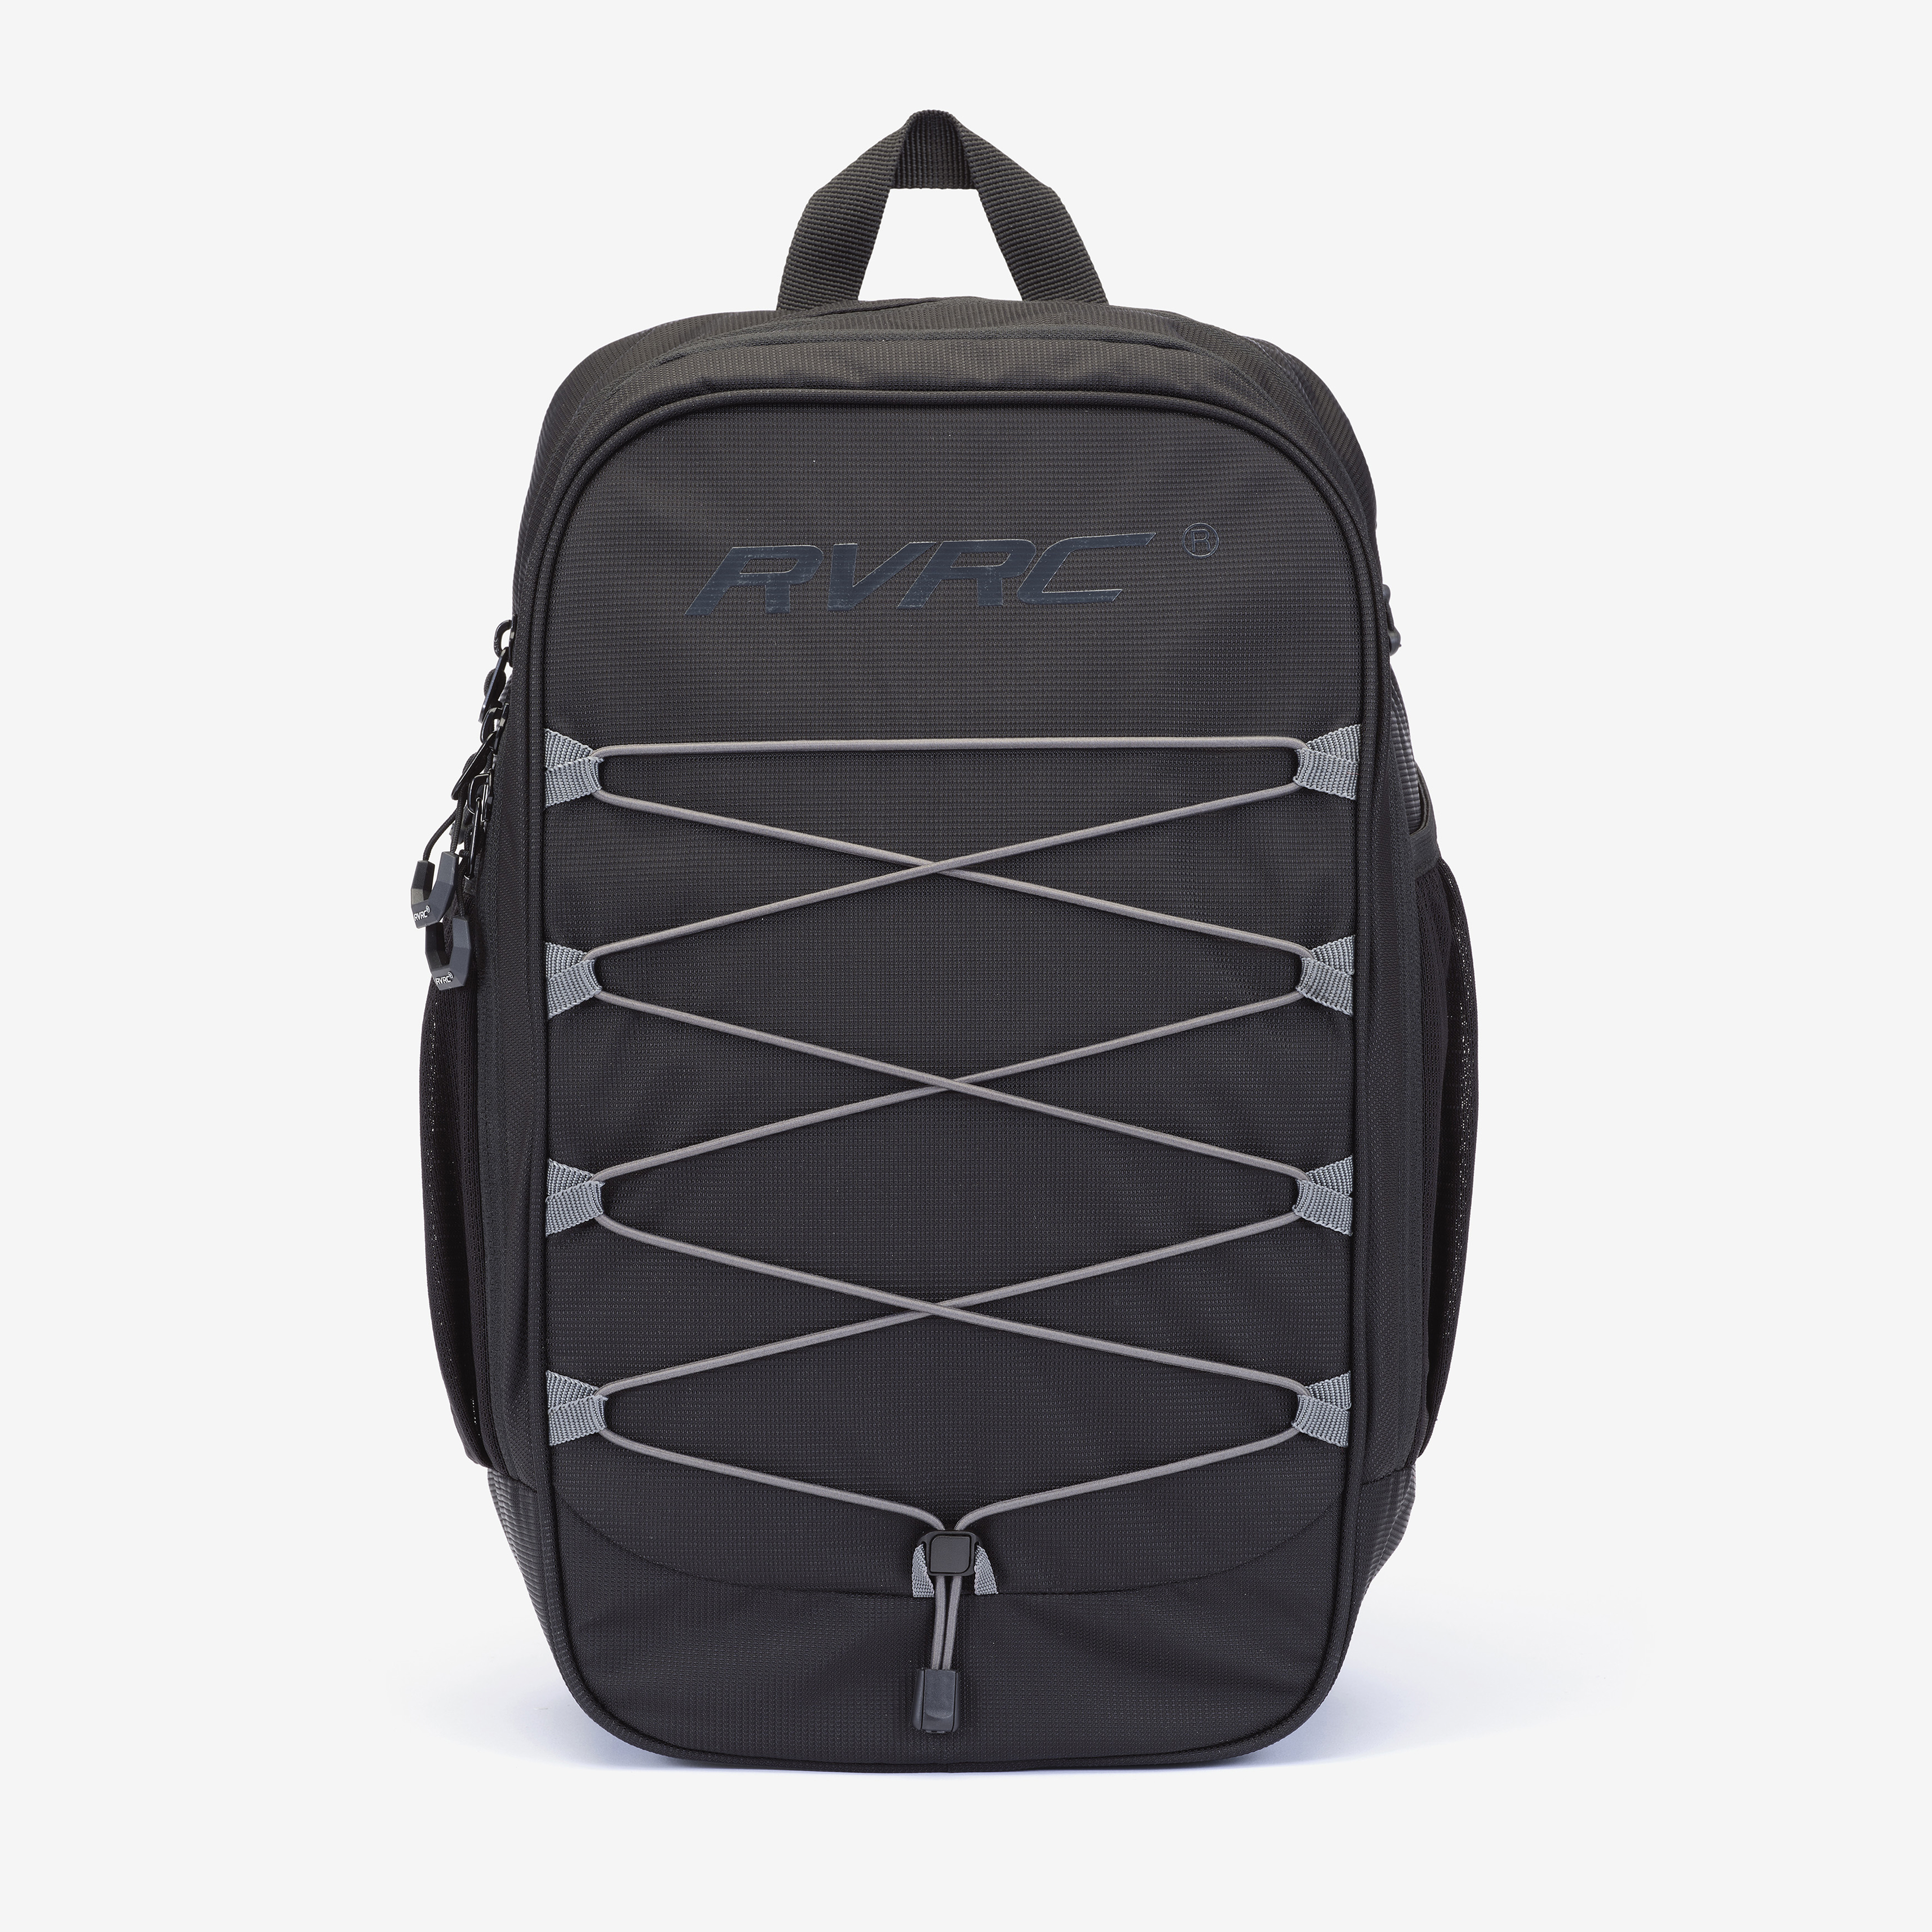 Explor Backpack 15L Black